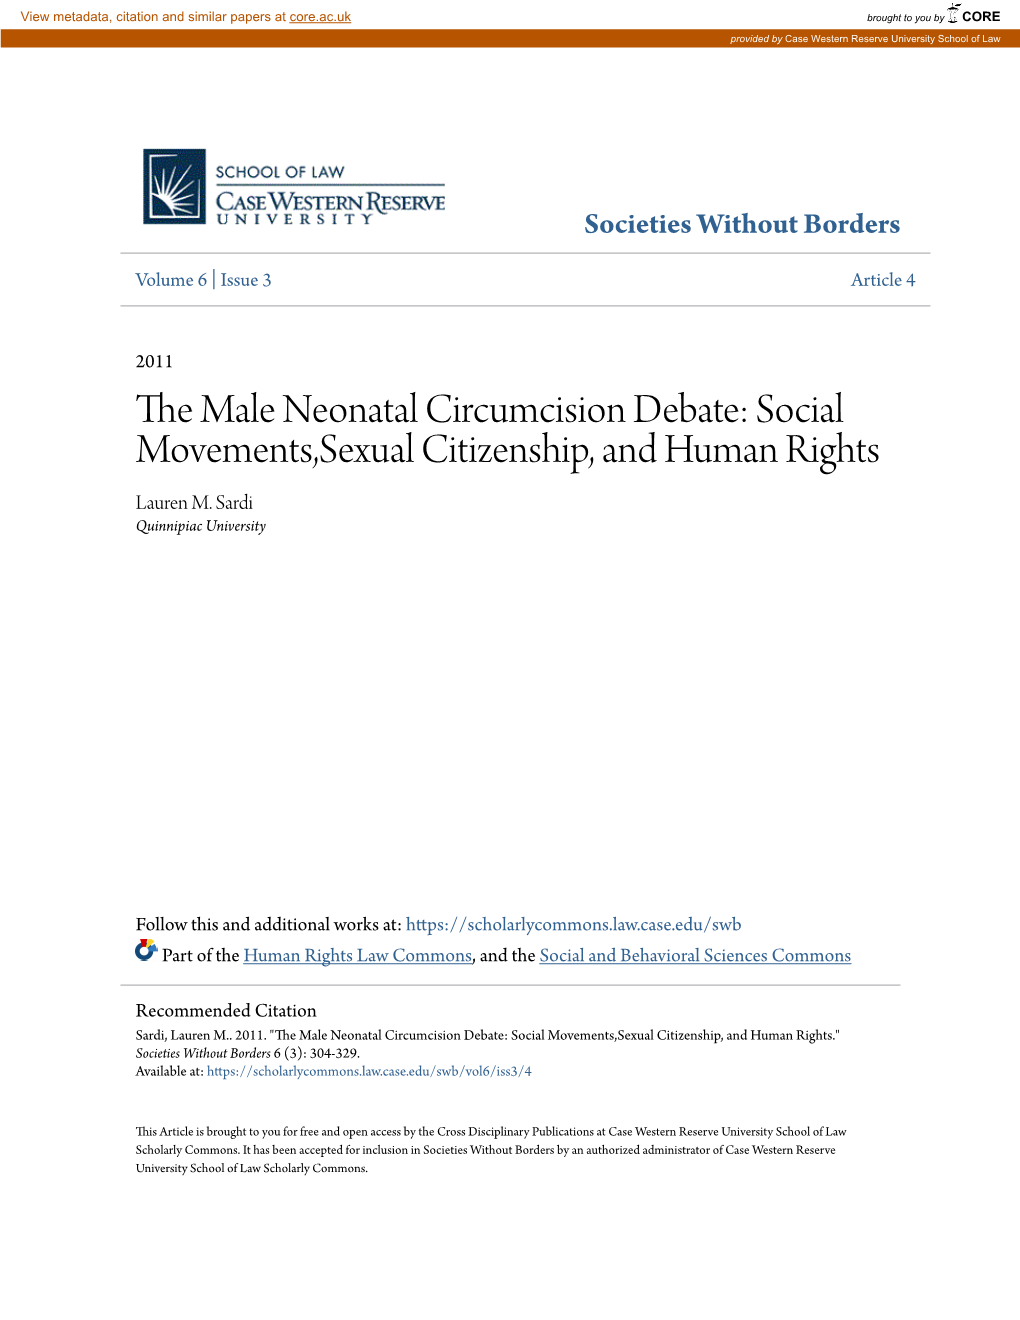 The Male Neonatal Circumcision Debate: Social Movements,Sexual Ci